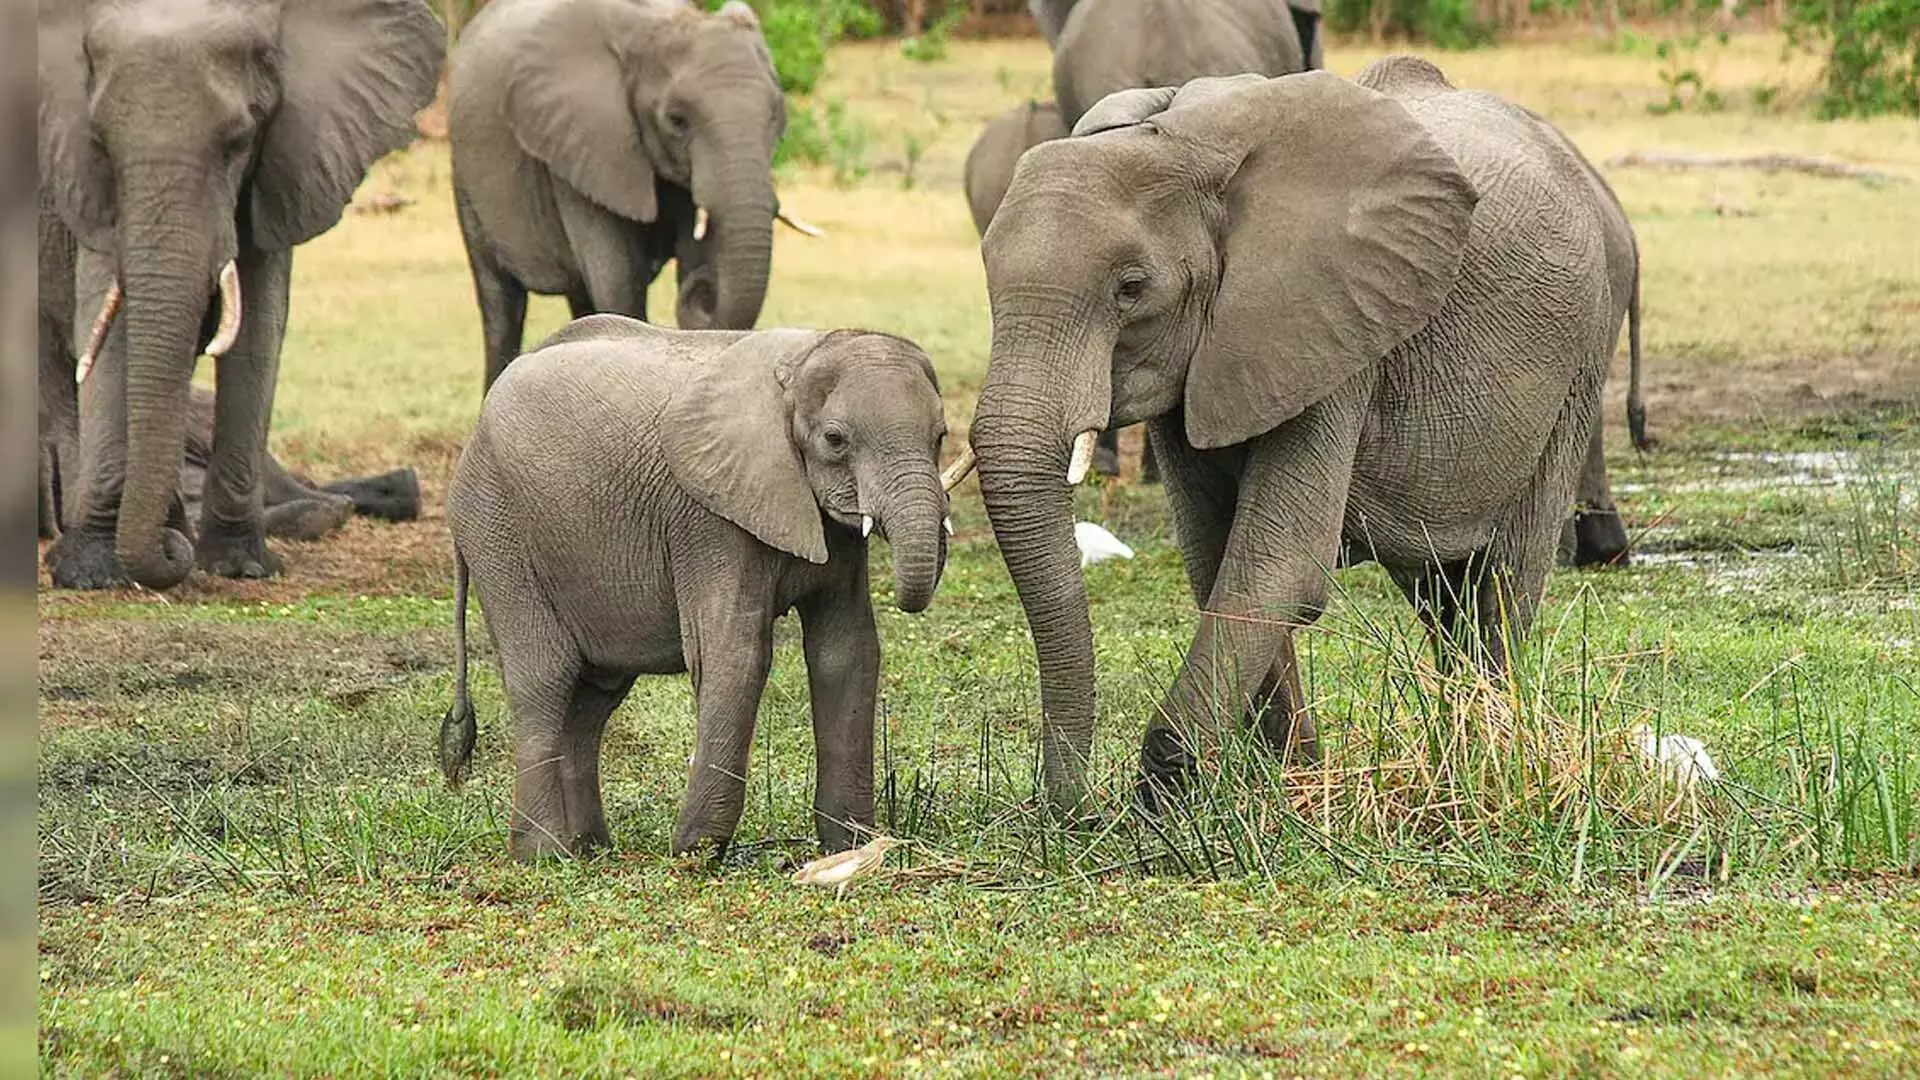 study: में पाया गया कि हाथी एक दूसरे को नाम से बुलाते हैं